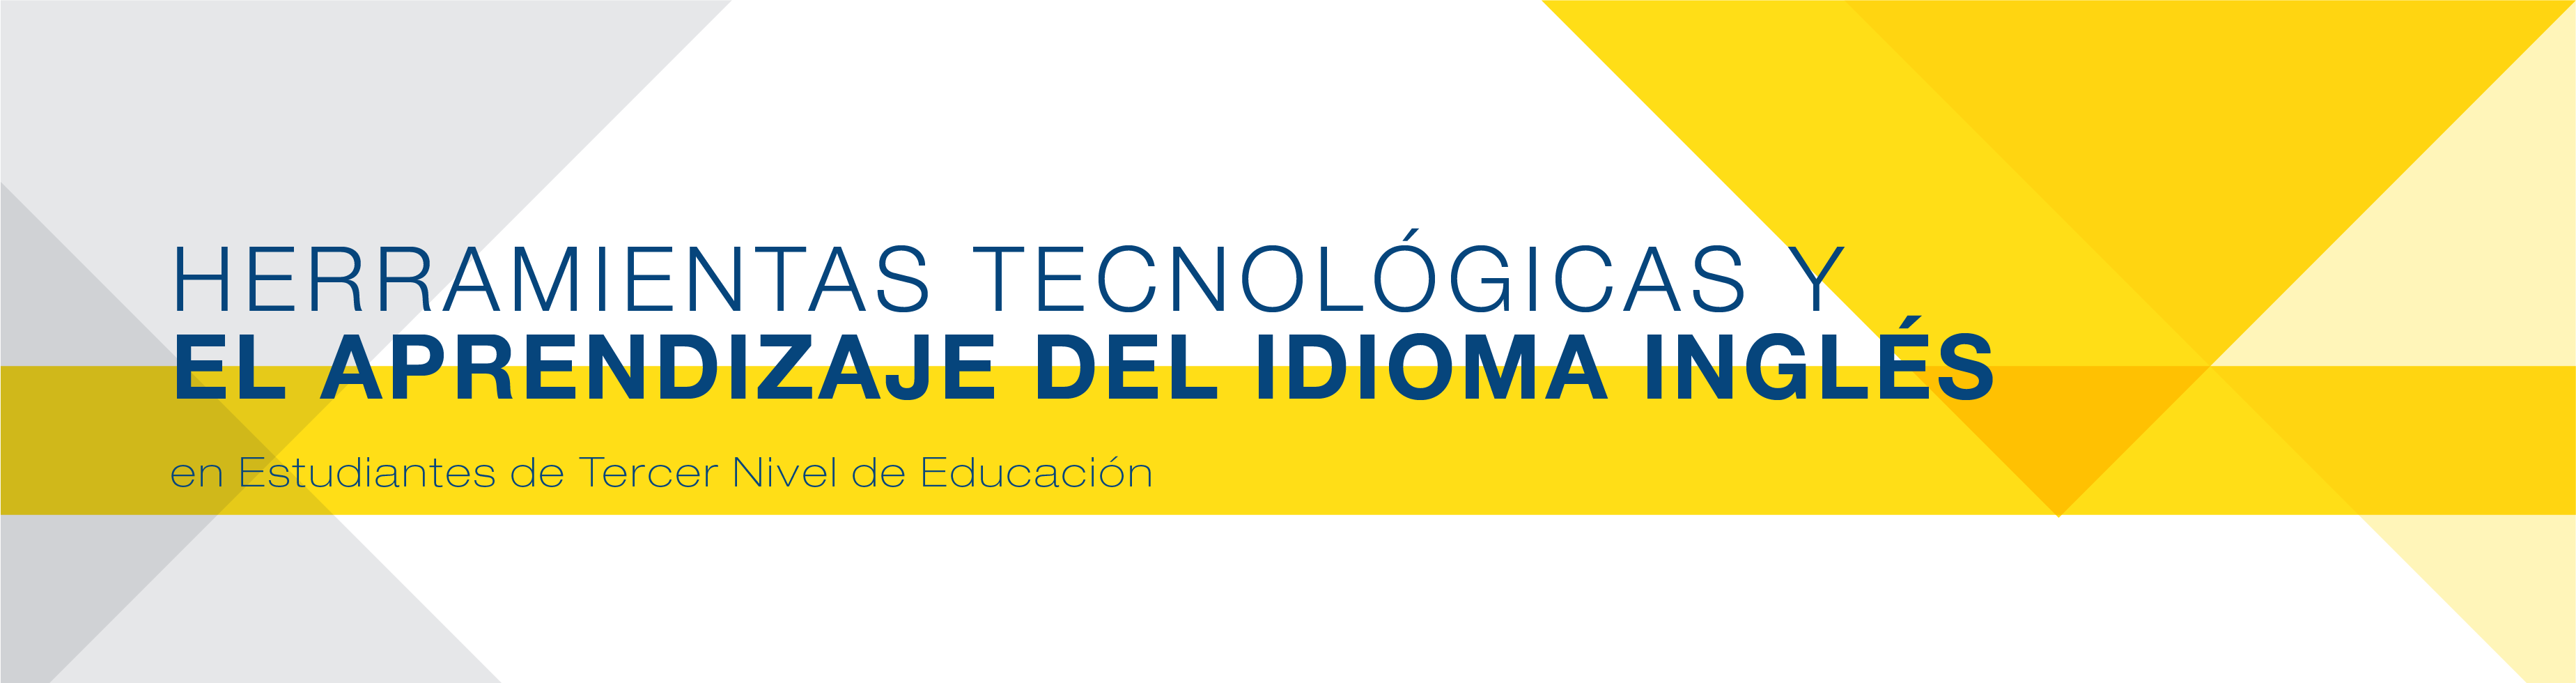 Herramientas Tecnológicas y el Aprendizaje del Idioma Inglés en Estudiantes de Tercer Nivel de Educación